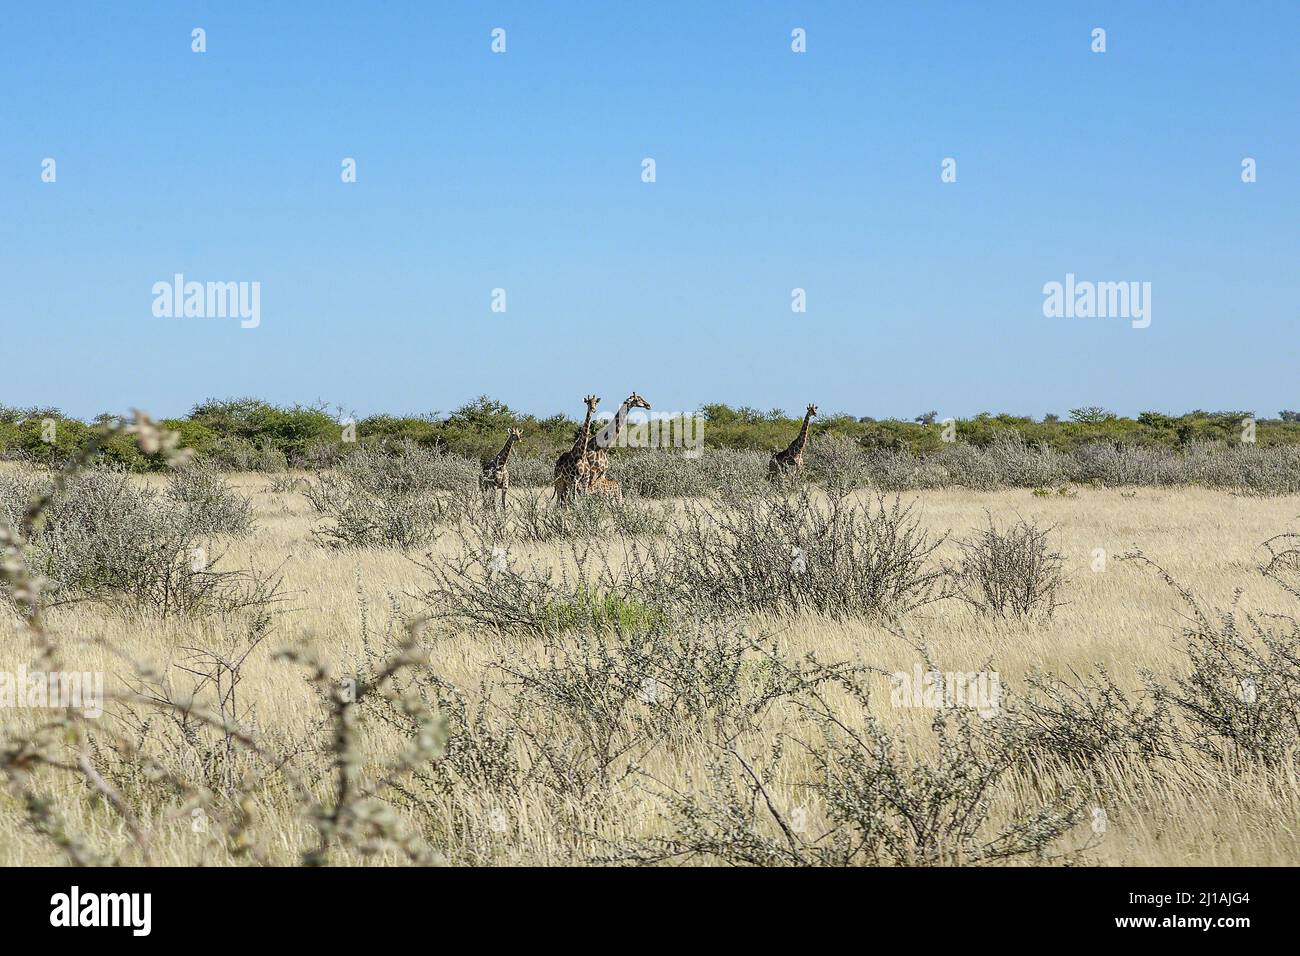 Un pequeño grupo de jirafas (5) que incluye una jirafa bebé rodeada de hierba larga, arbustos y árboles en el Parque Nacional Etosha, Namibia, Sudáfrica Foto de stock